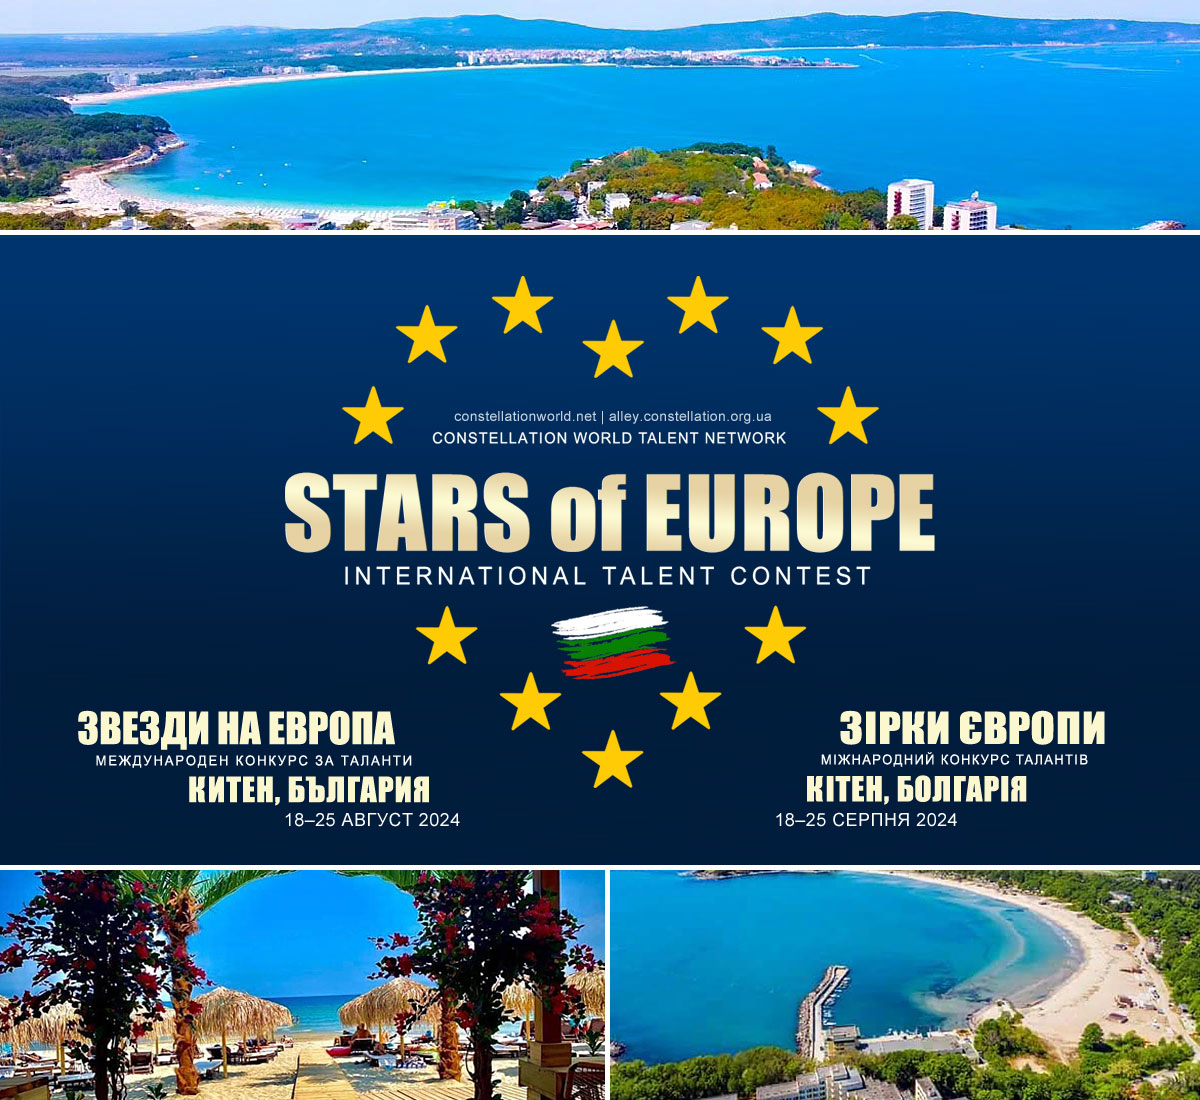 Міжнародний очний конкурс-фестиваль ЗІРКИ ЄВРОПИ: КІТЕН 2024 запрошує всіх творчих друзів на творчий тиждень (18-25 серпня) на морі, в Болгарії, в місті Кітен.